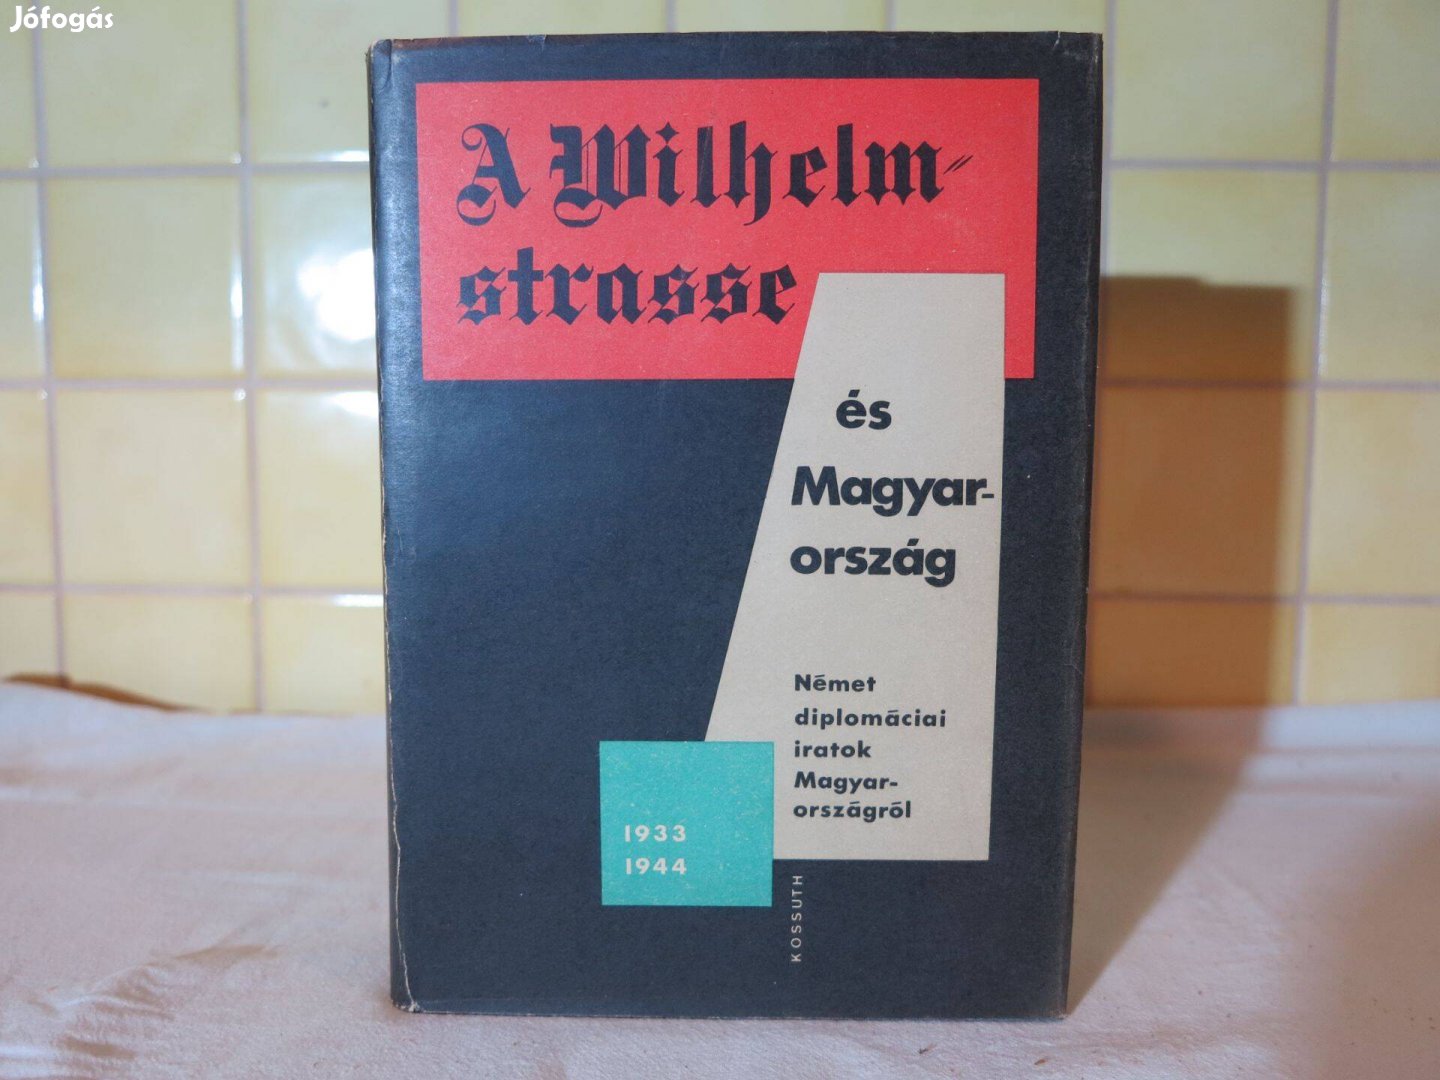 A Wilhelm-strasse és magyarország.1kötet